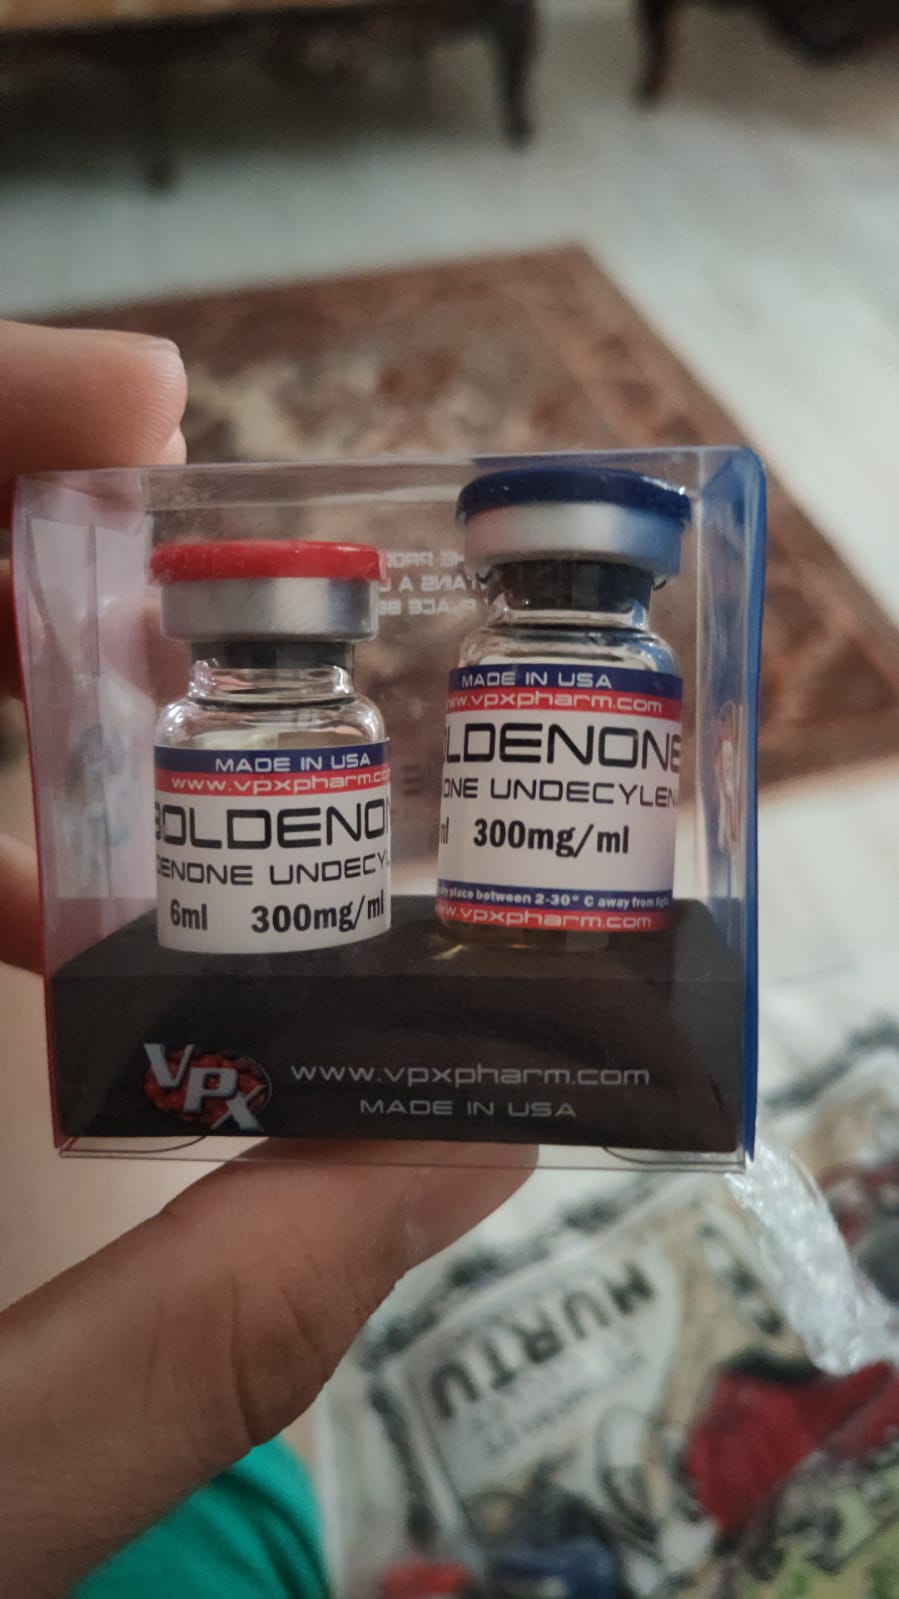 Vedi pharma - Marka Analizleri - Peptid Türkiye ( Fitness, Cross Fit, Vücut  Geliştirme )